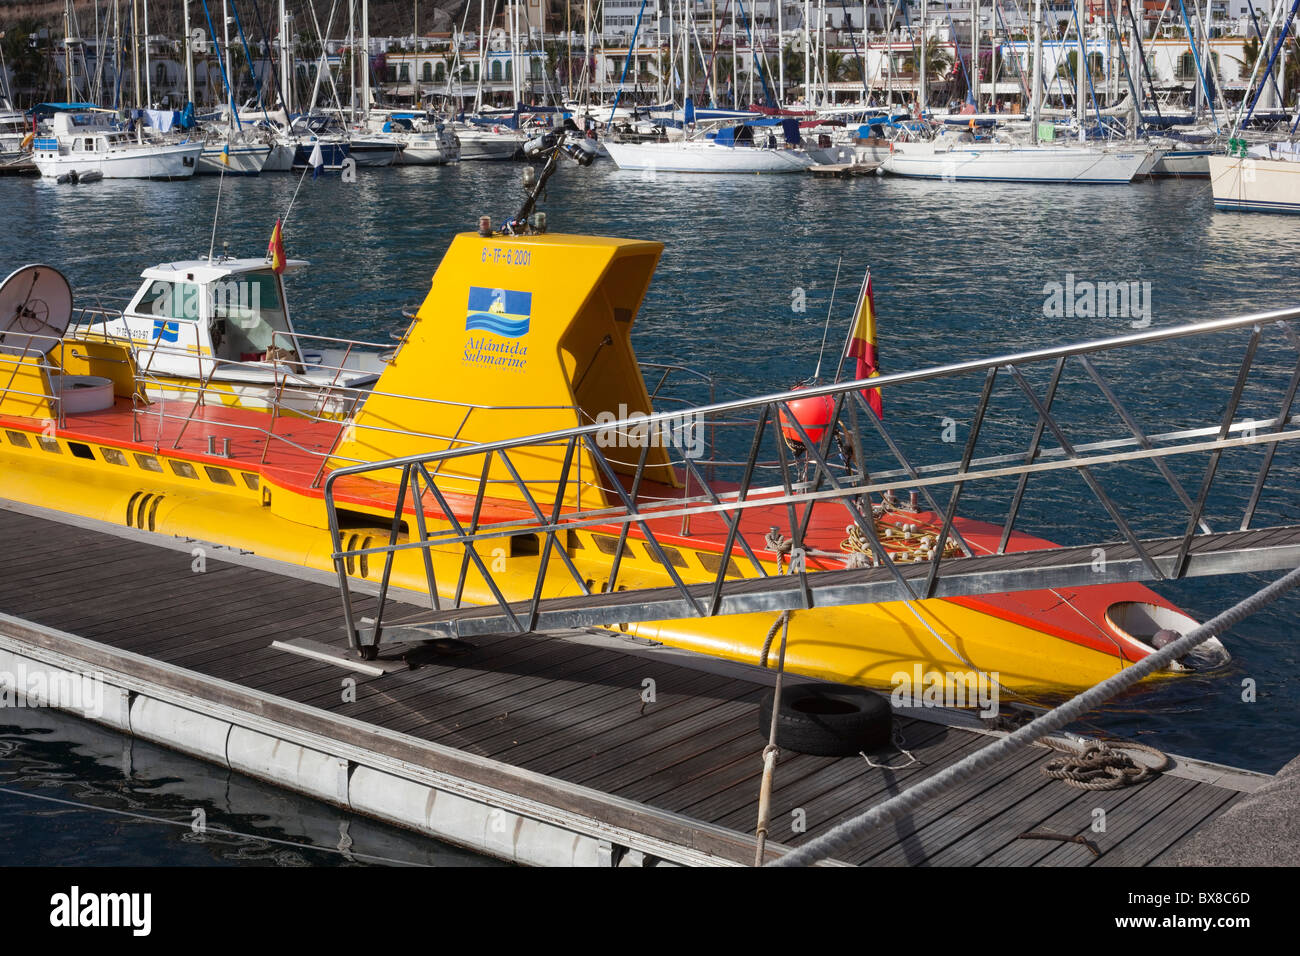 Spagna isole canarie Gran Canaria, Puerto de Mogan, sottomarino giallo in fase di atterraggio Foto Stock